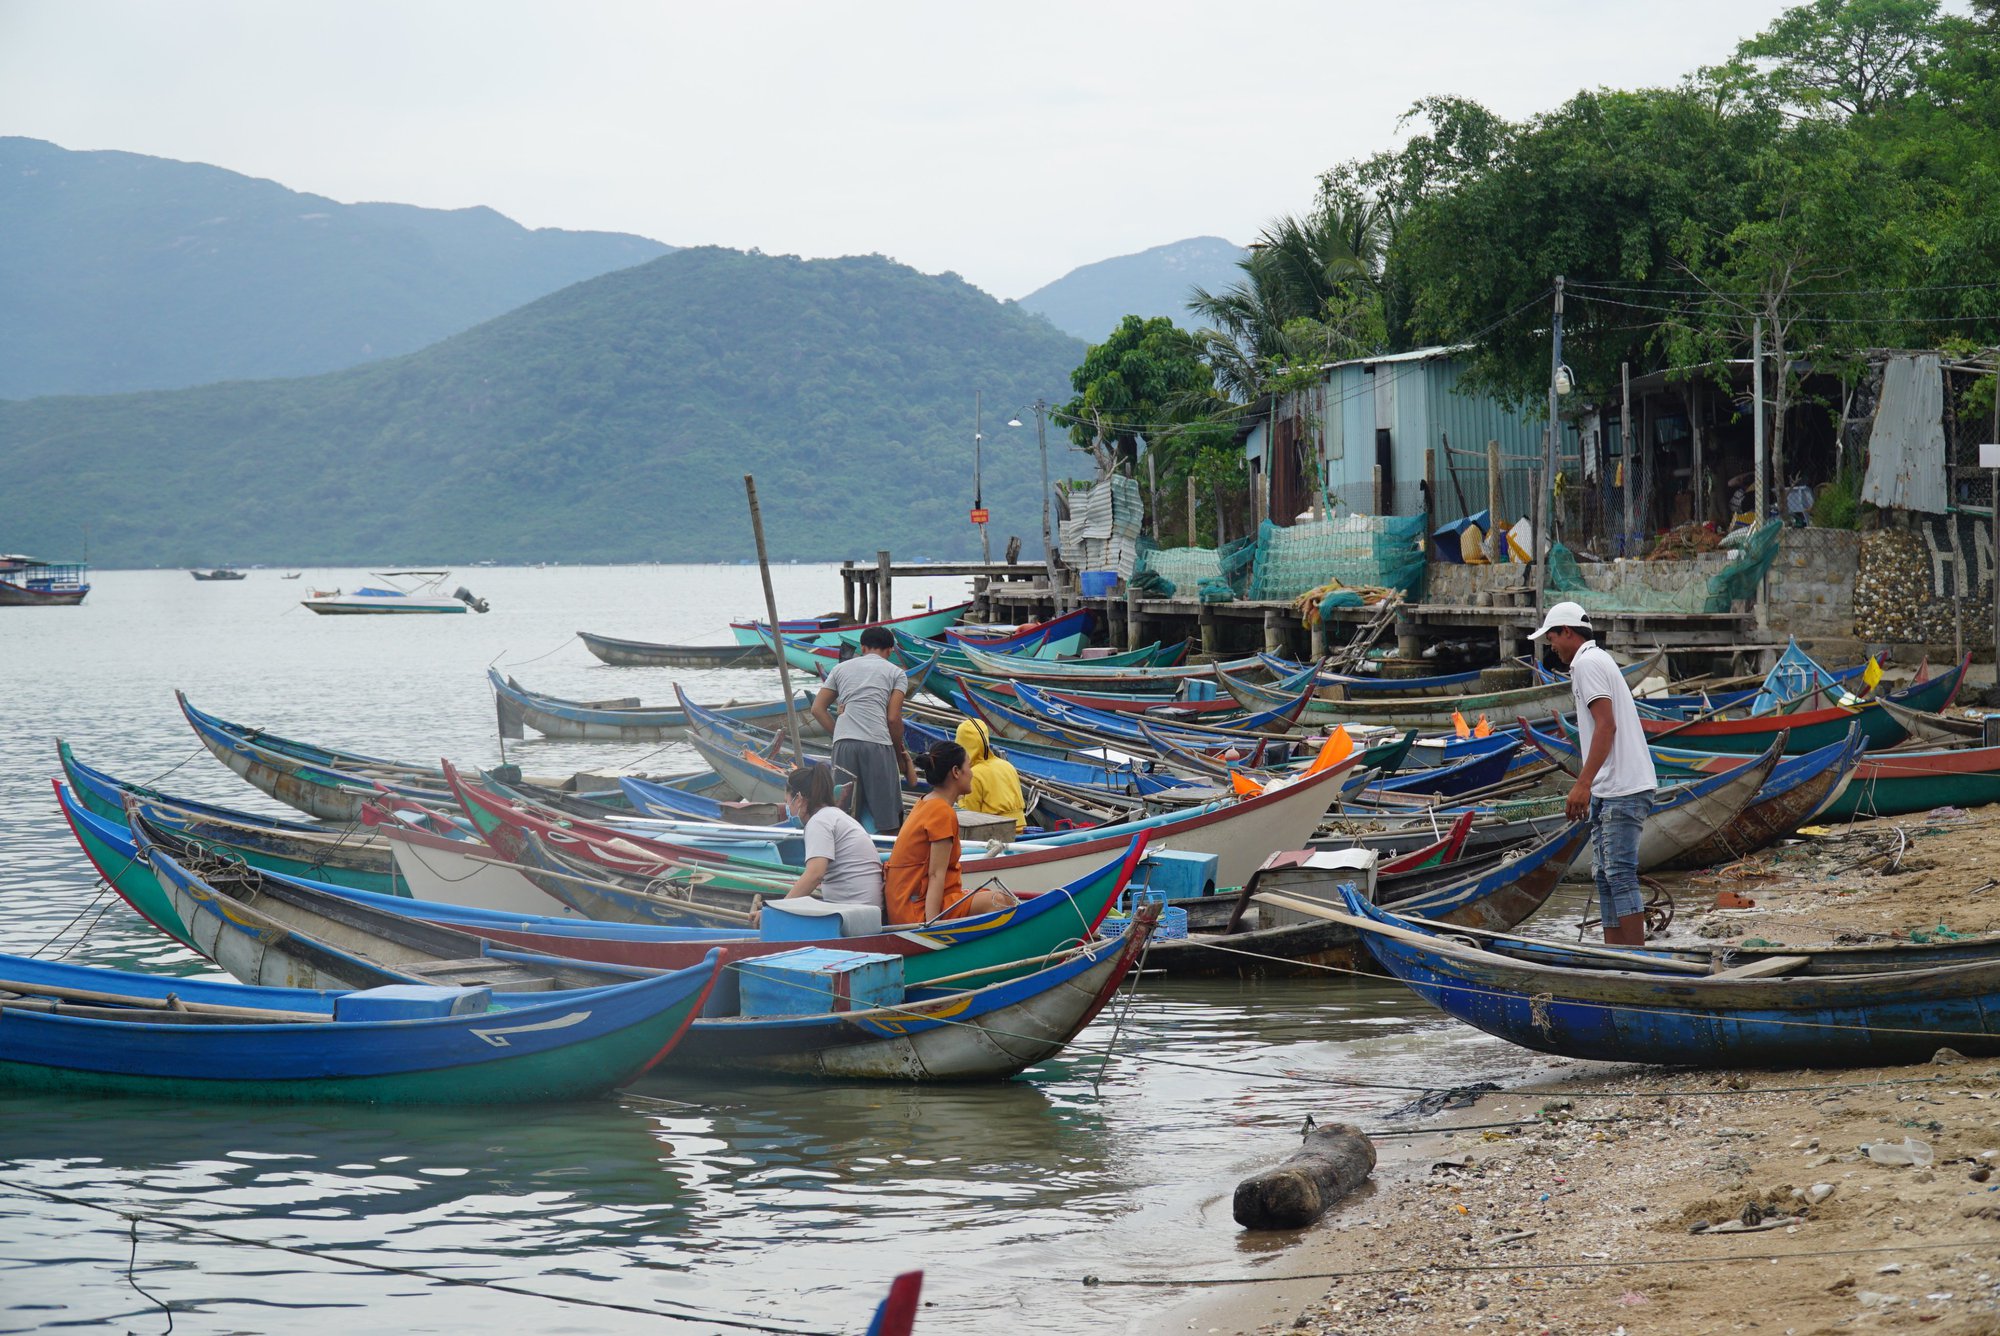 Ngư dân Khánh Hòa đi săn tôm tít biển để bán cho nhà hàng, chợ kiếm gần 500 ngàn đồng/ngày - Ảnh 3.